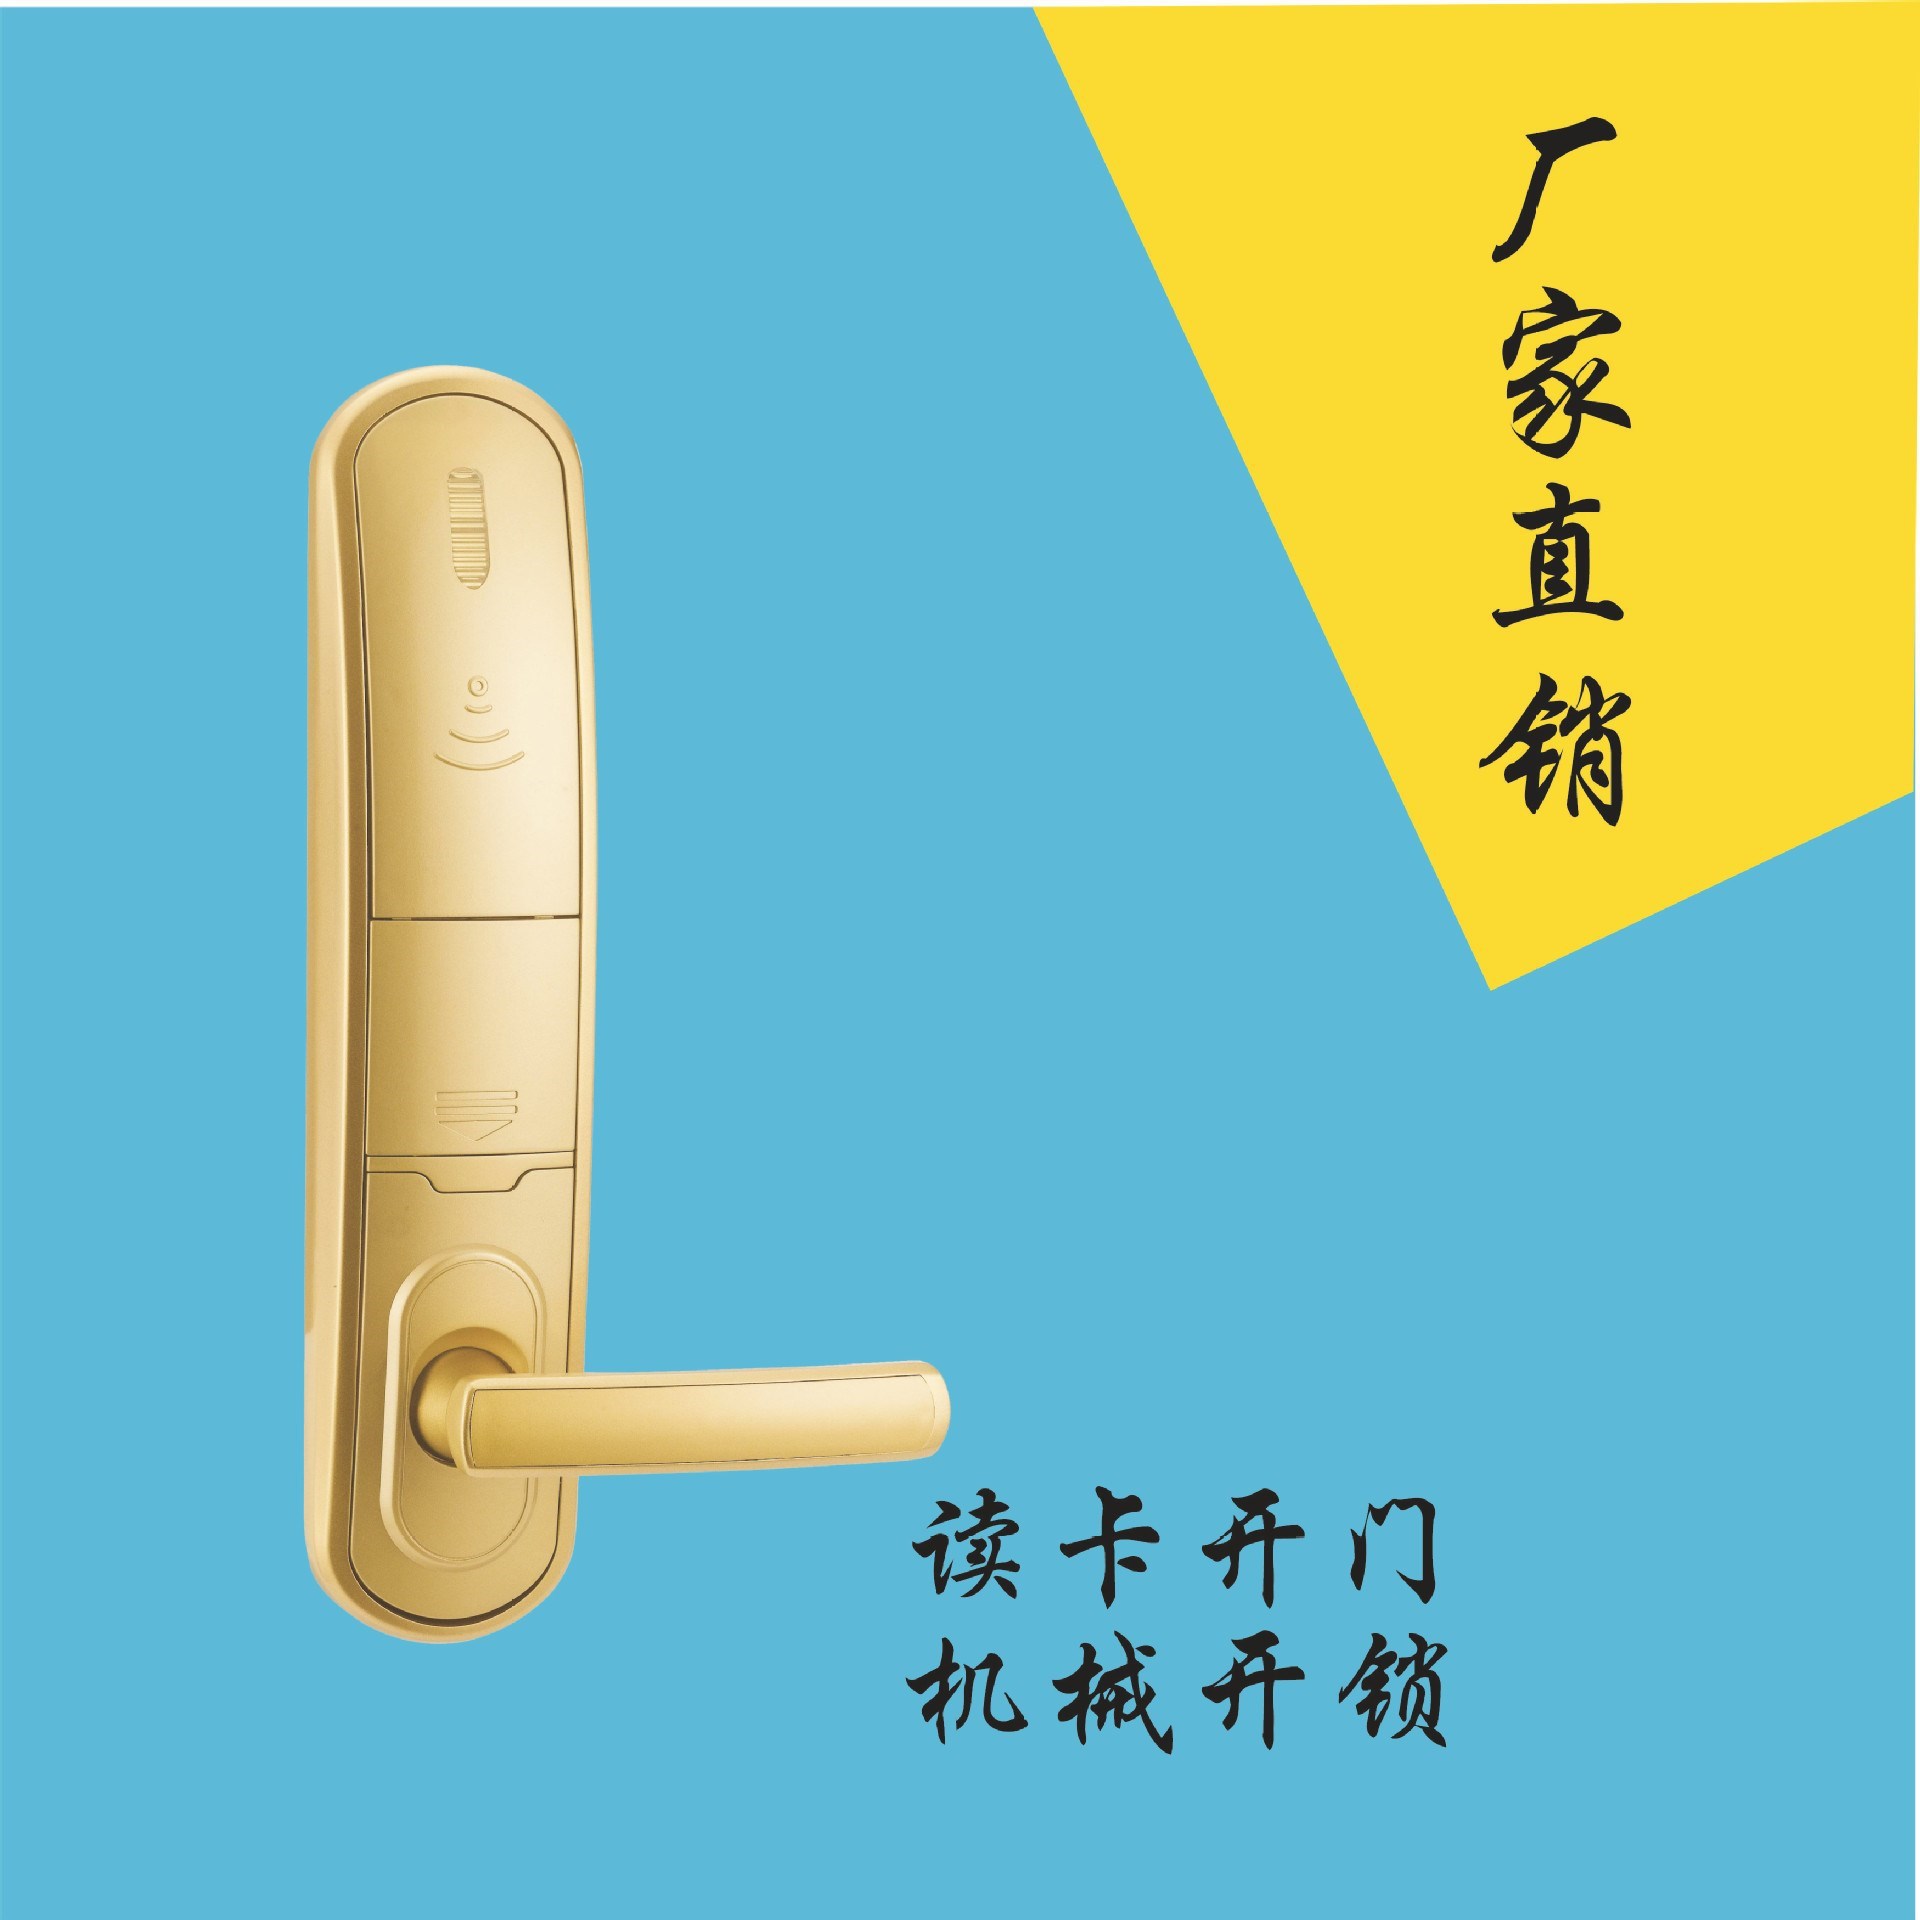 日翔锌合金酒店电子磁卡智能刷卡感应门锁 智能门锁 IC卡锁